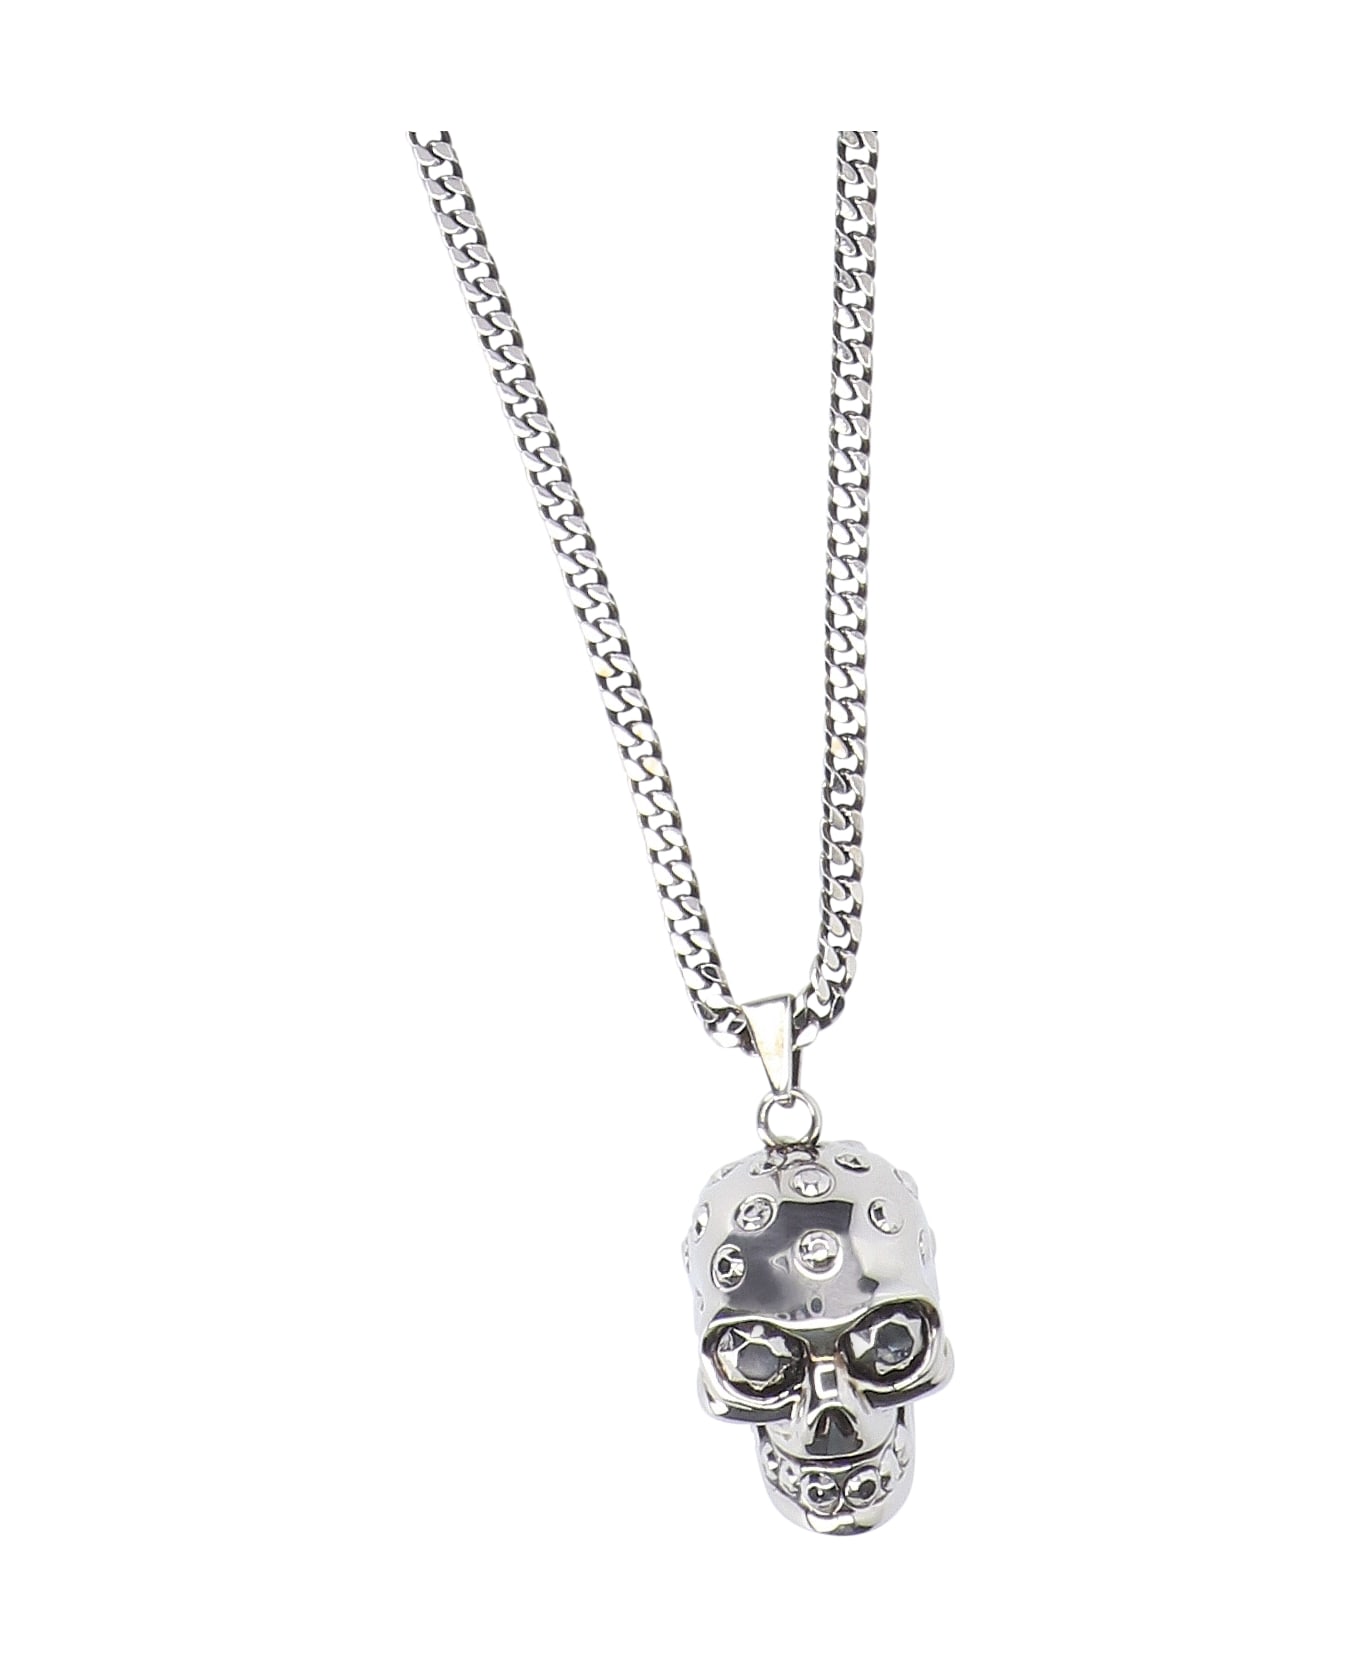 Alexander McQueen Skull Necklace - Sil V B Antil